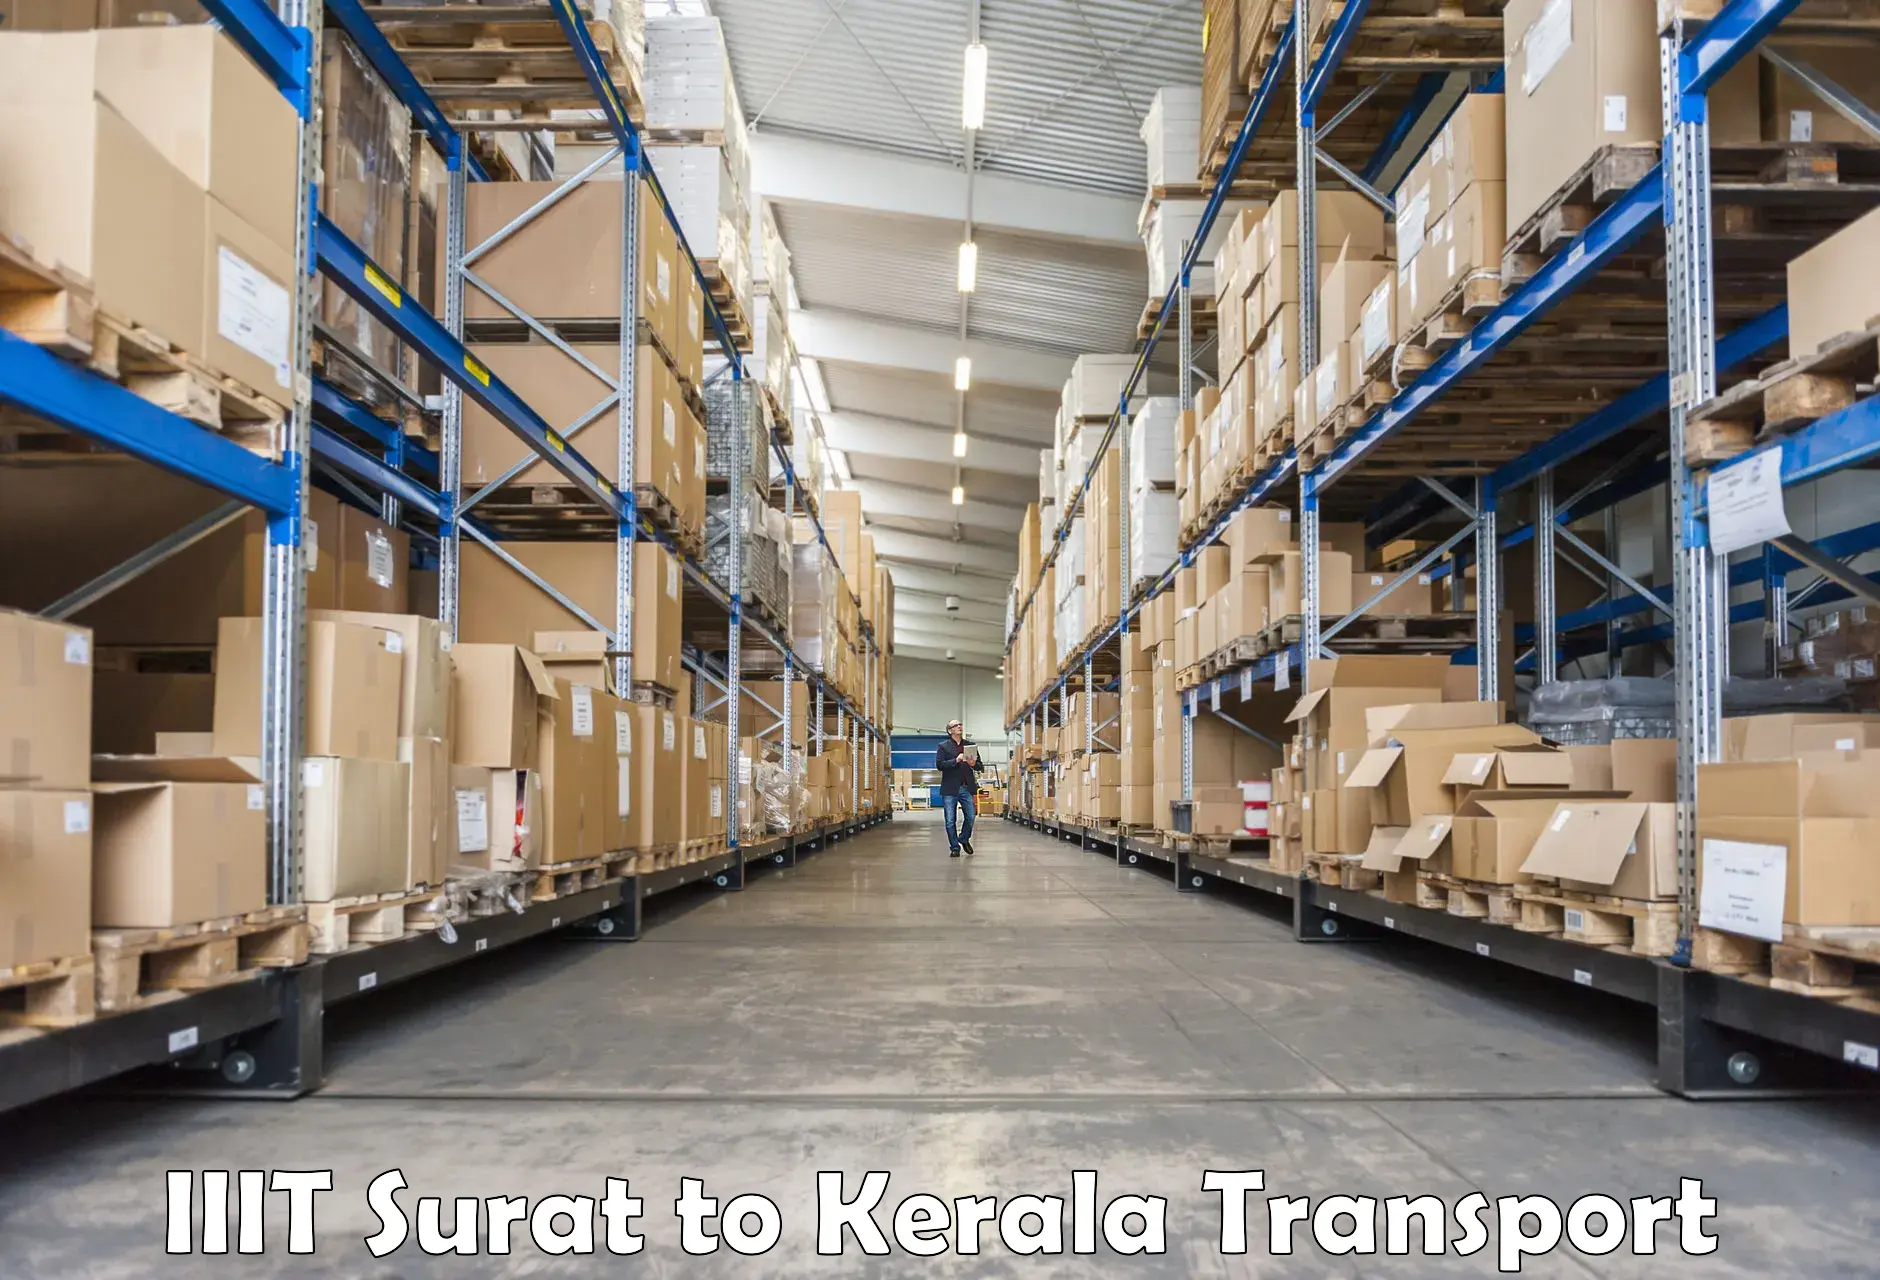 Online transport service IIIT Surat to Kerala